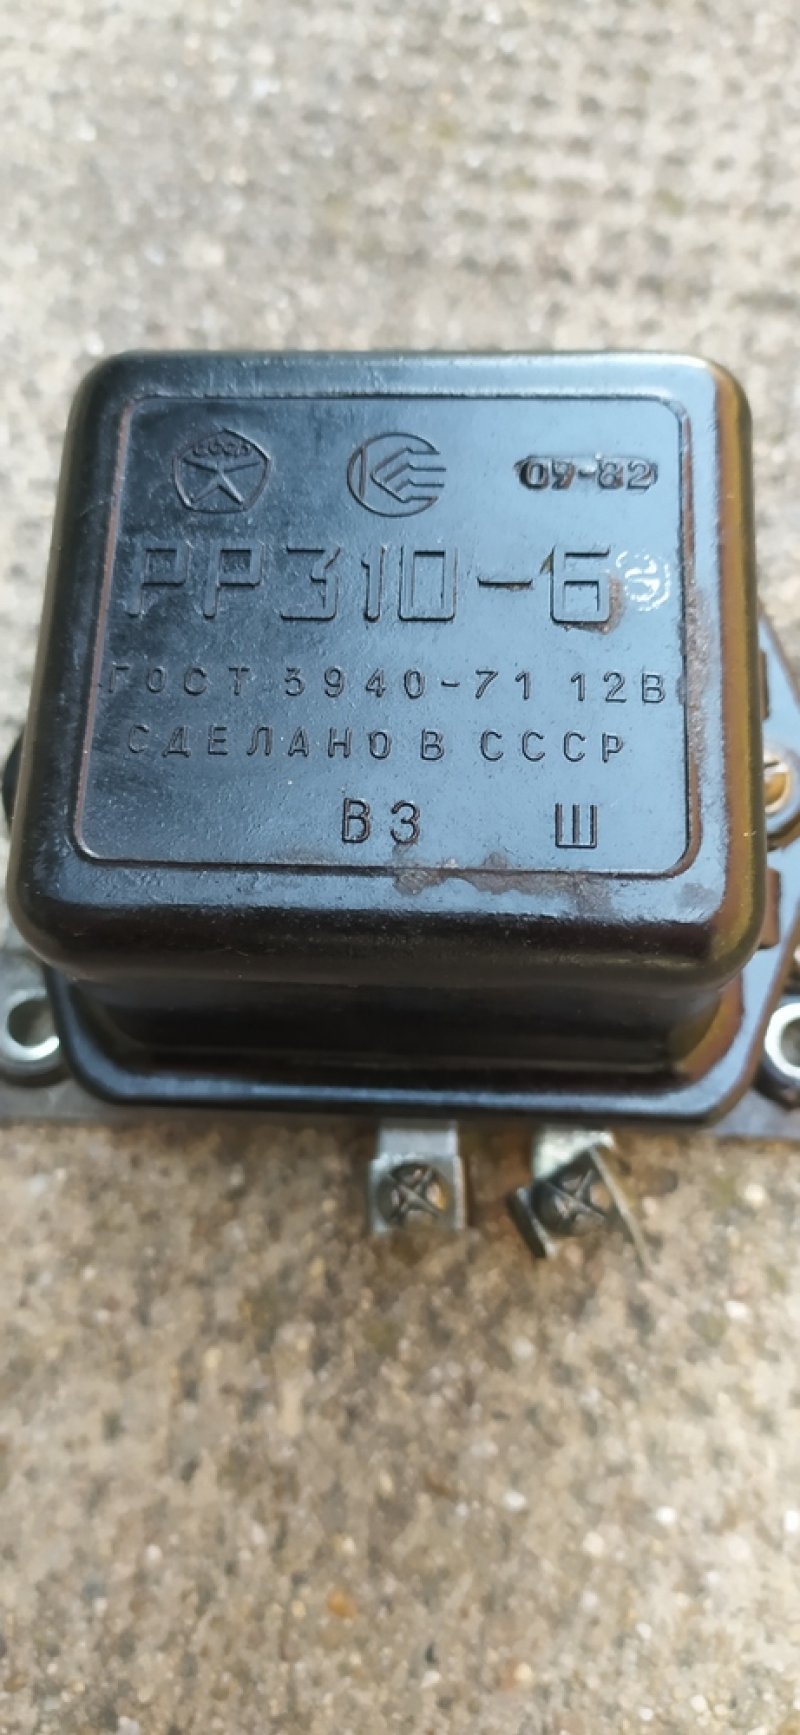 PP310-B 5940-71 12V orosz szovjet jármű feszültség szabályzó cccp ussr